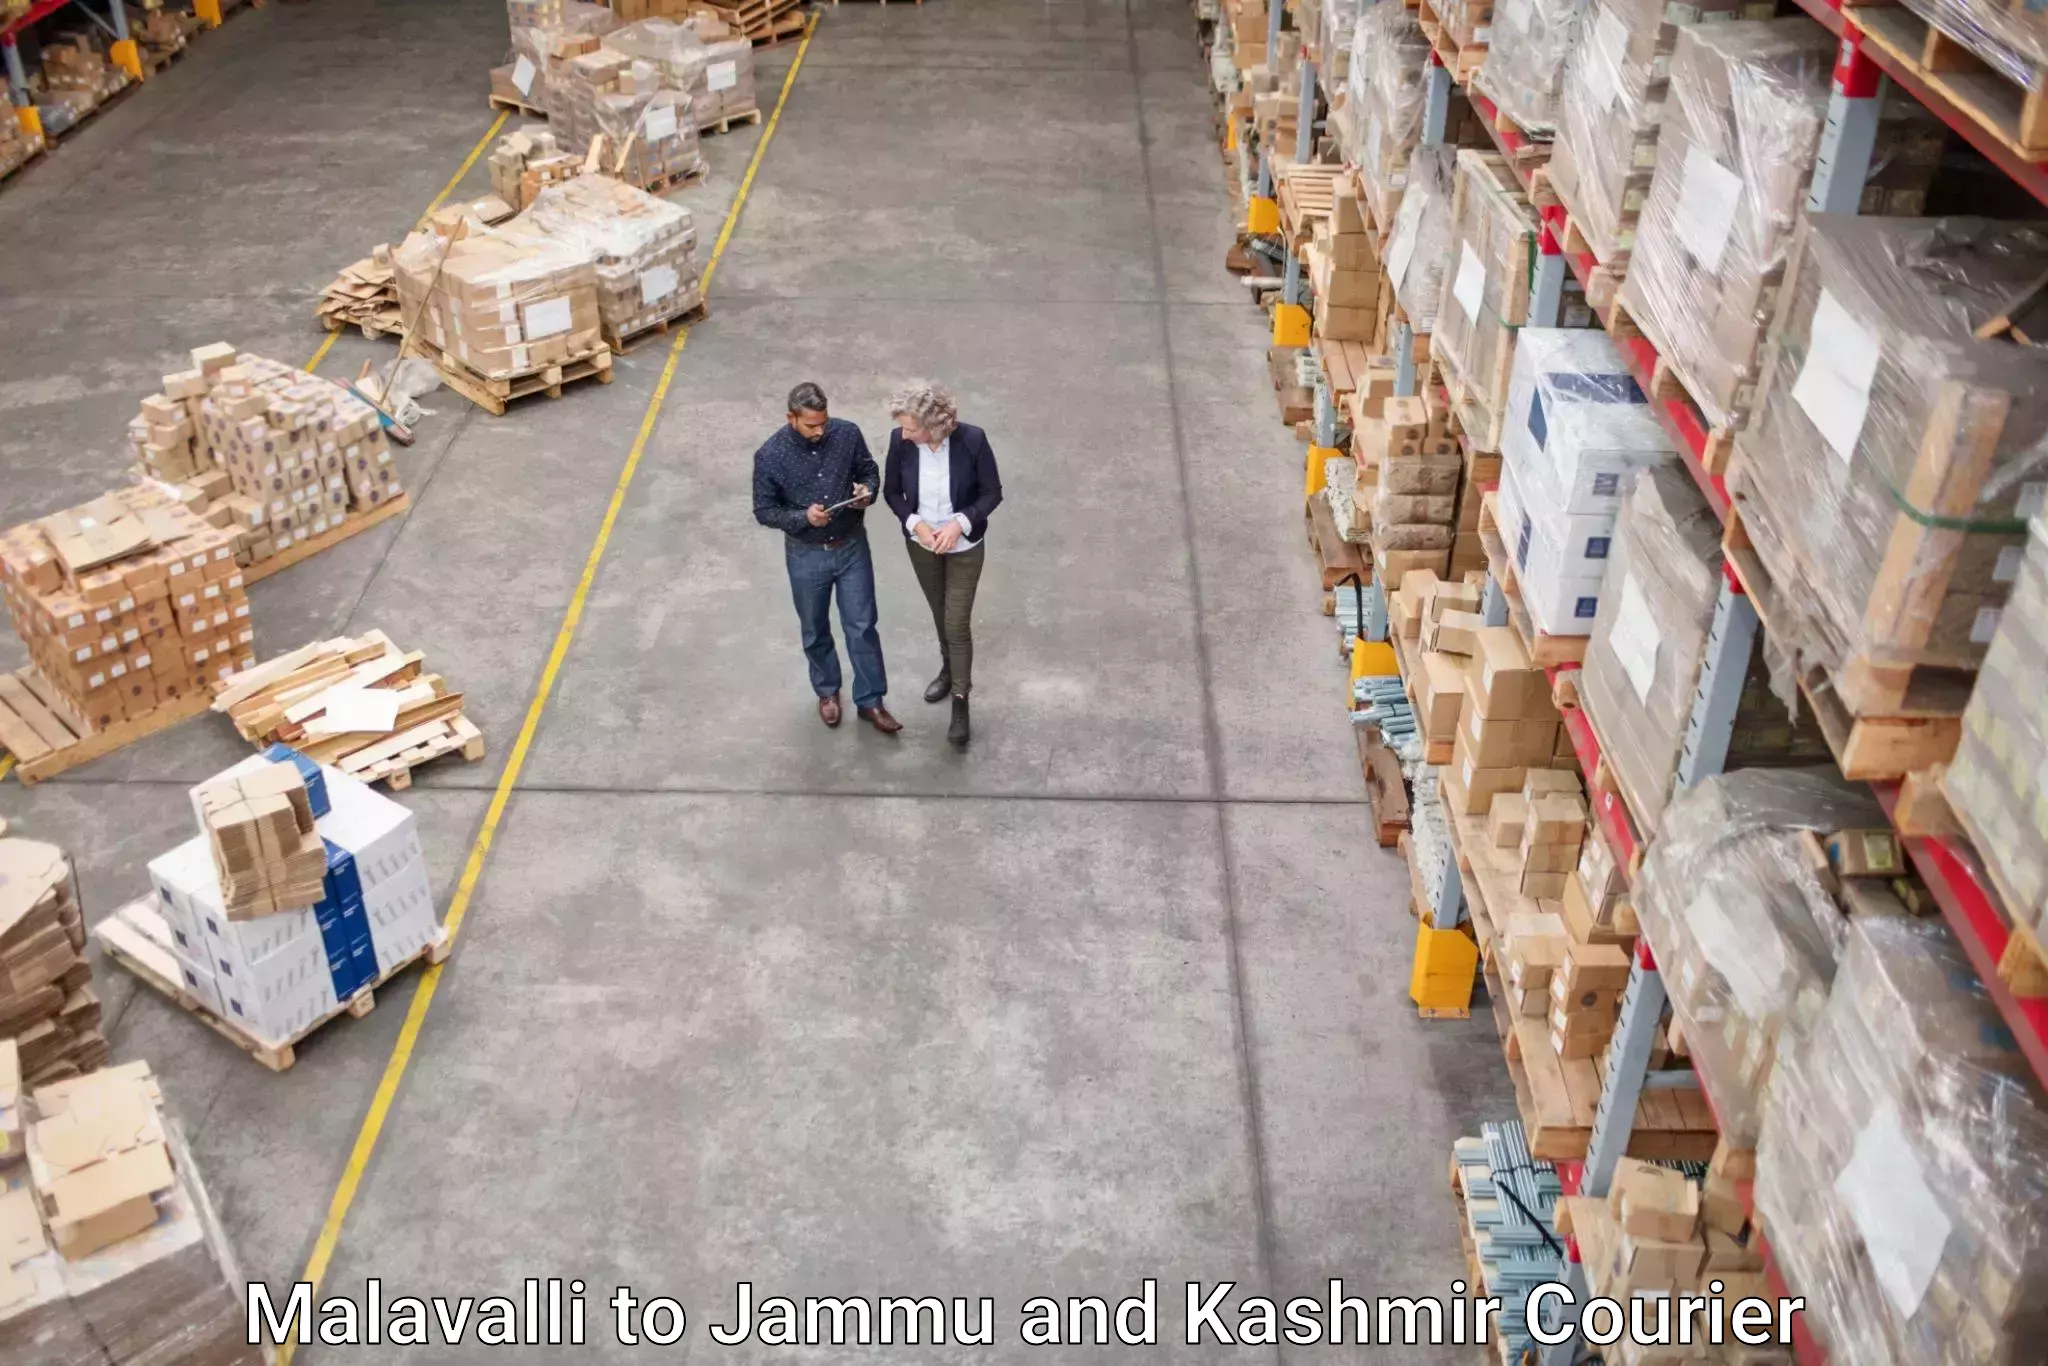 Seamless shipping experience Malavalli to Kathua